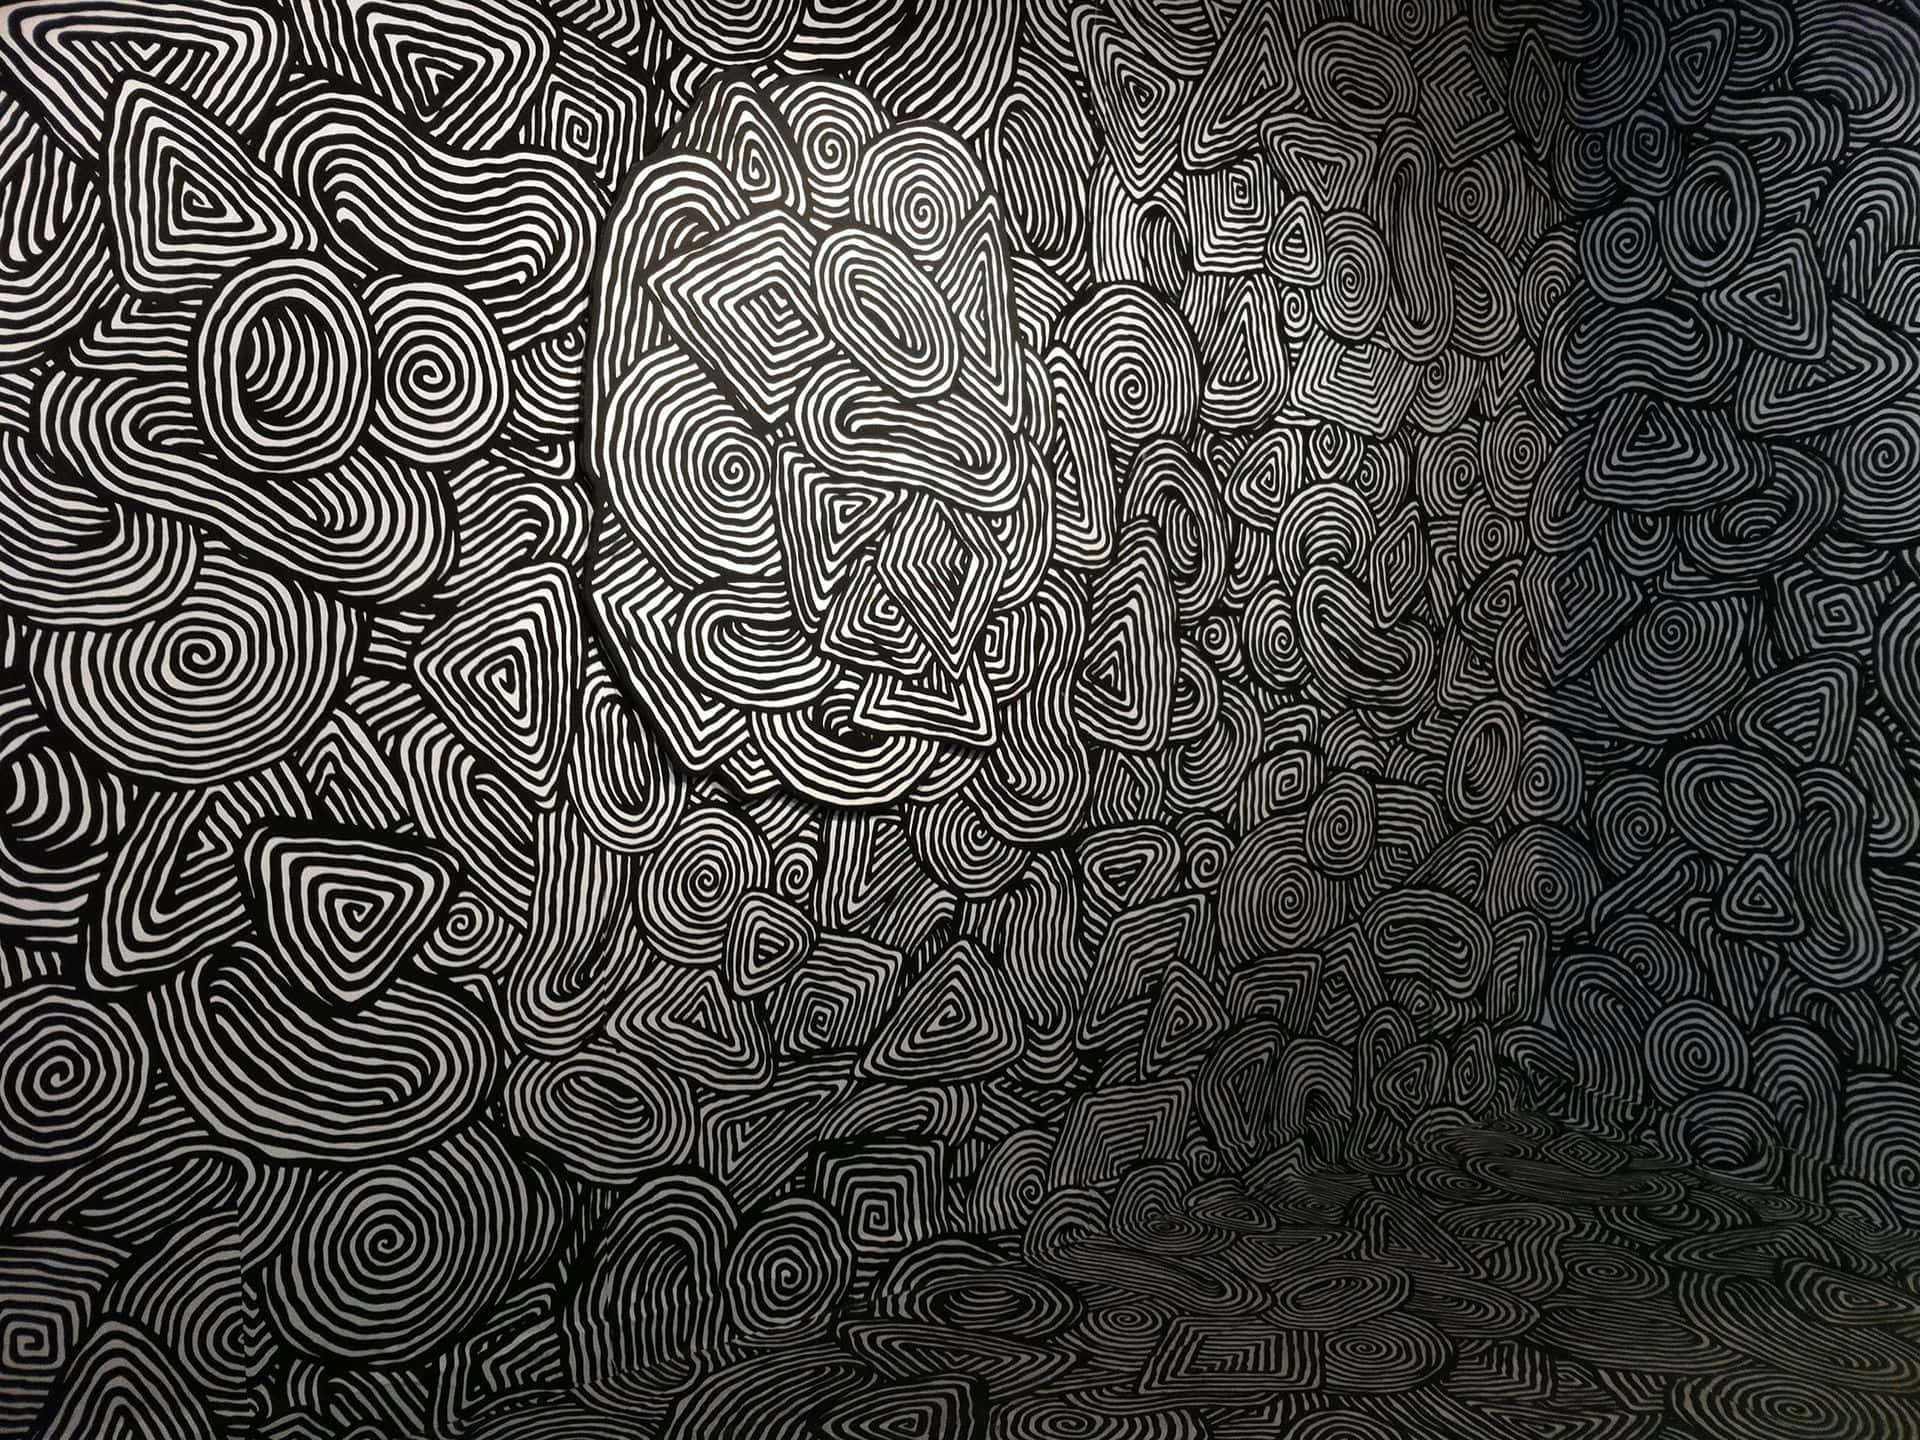 Få kreative med denne dynamiske sort-hvide mønster! Wallpaper